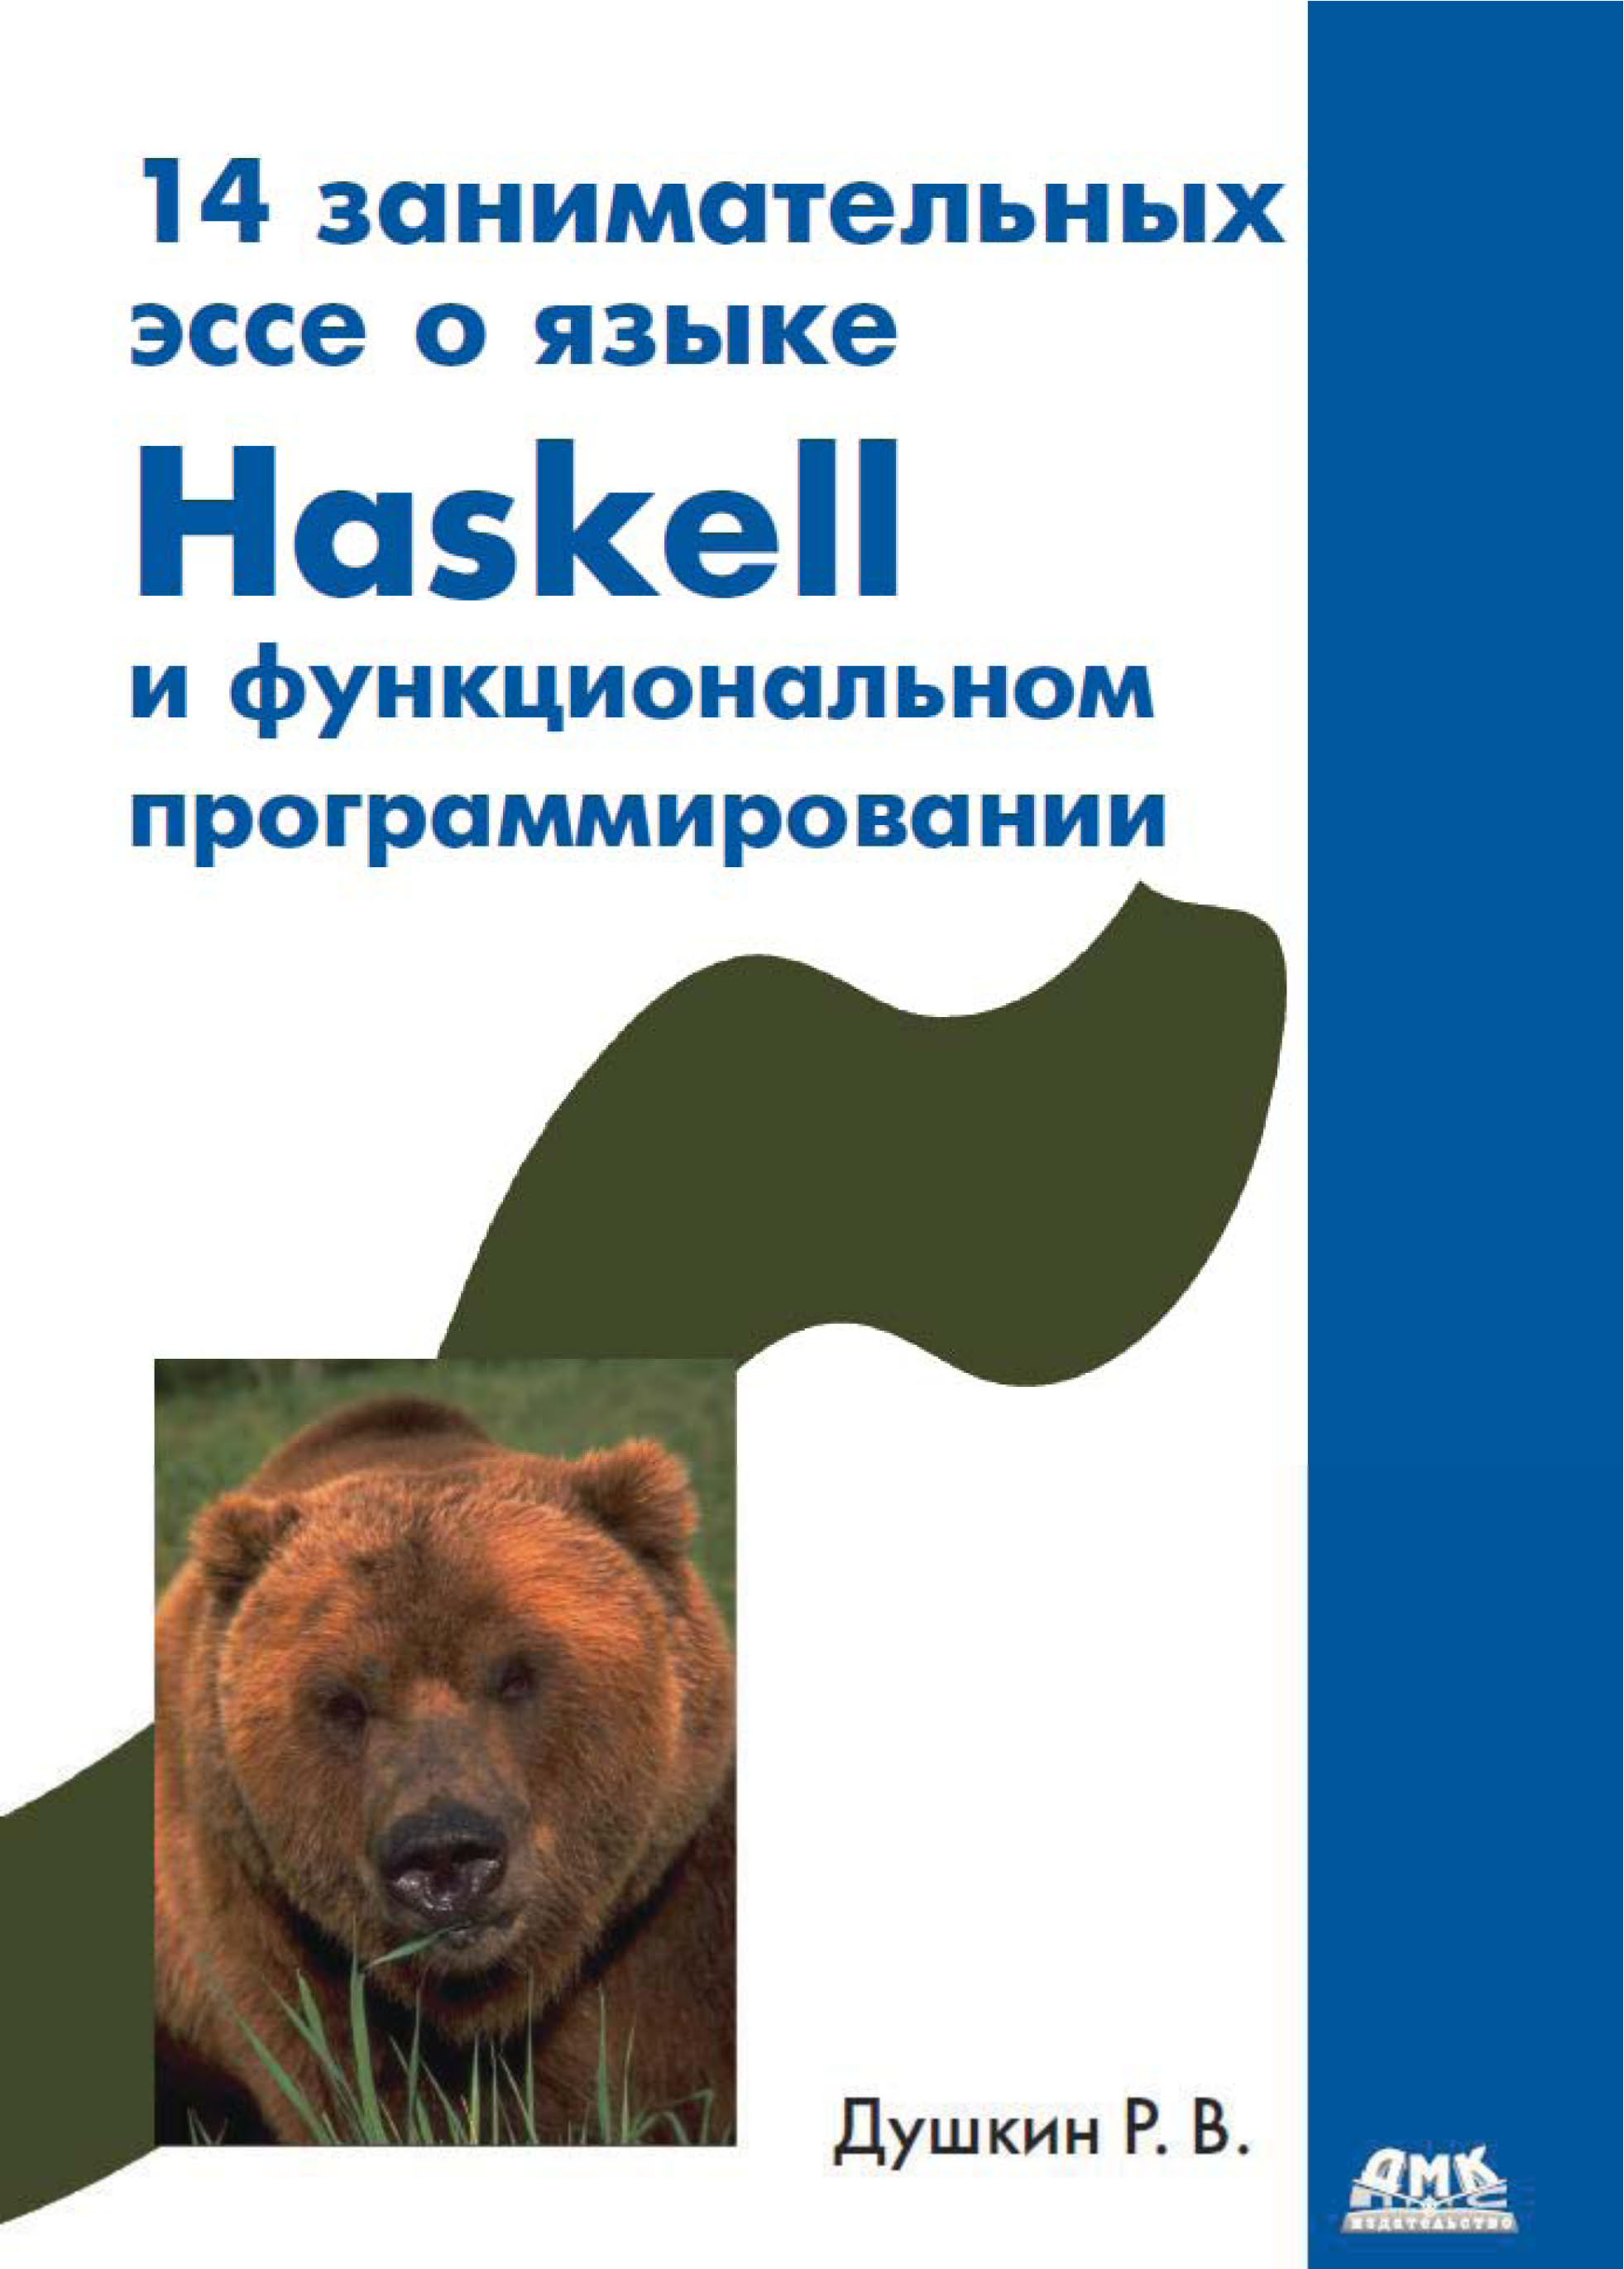 14занимательных эссе о языке Haskell и функциональном программировании